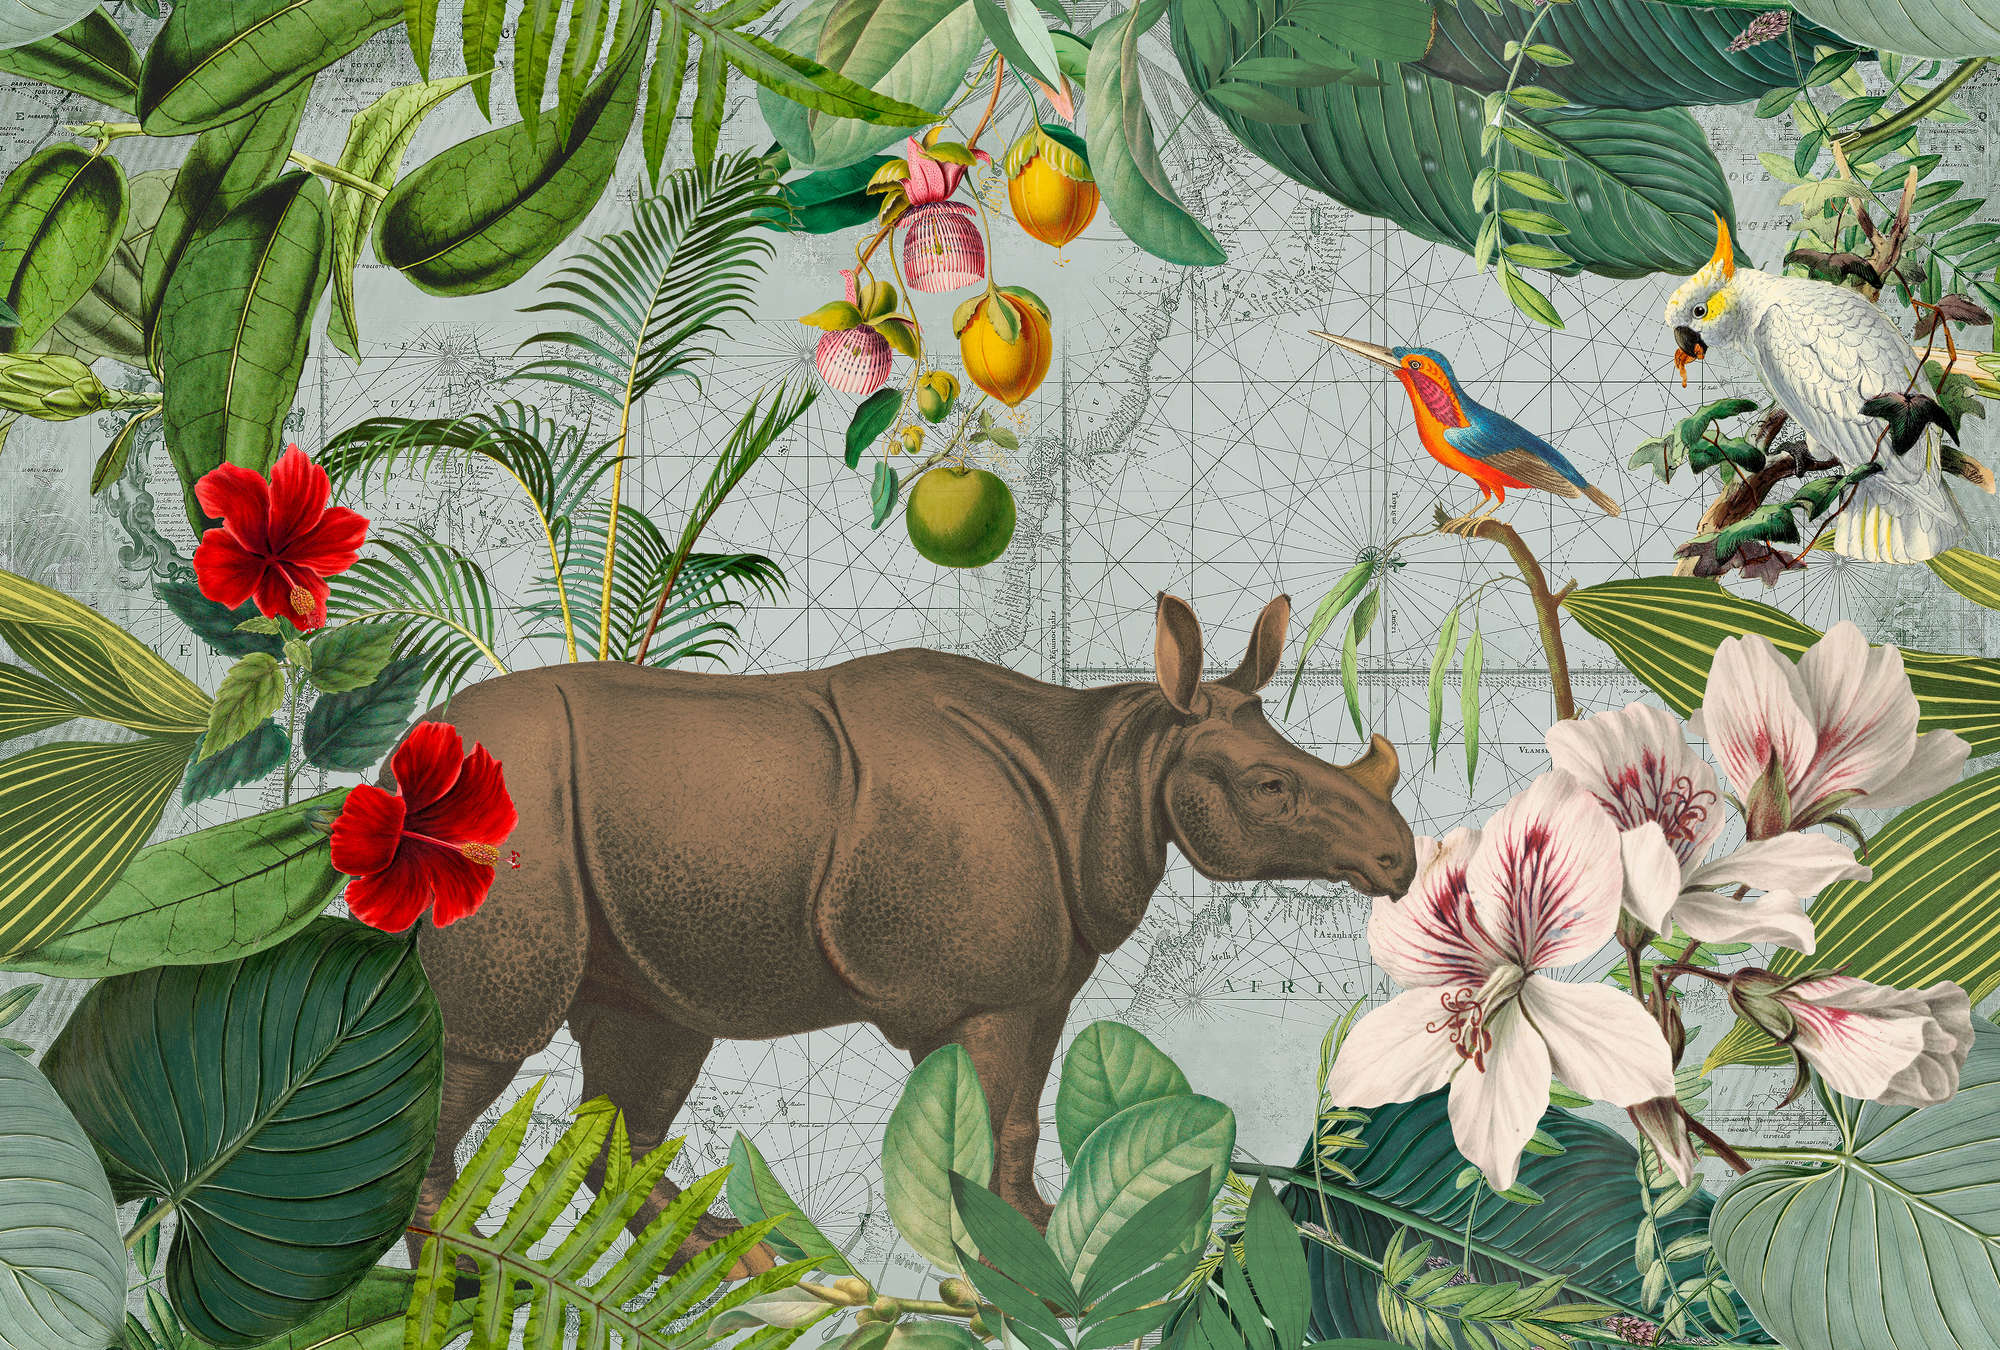             Papel Pintado Rinoceronte de Estilo Retro con Collage de Selva
        